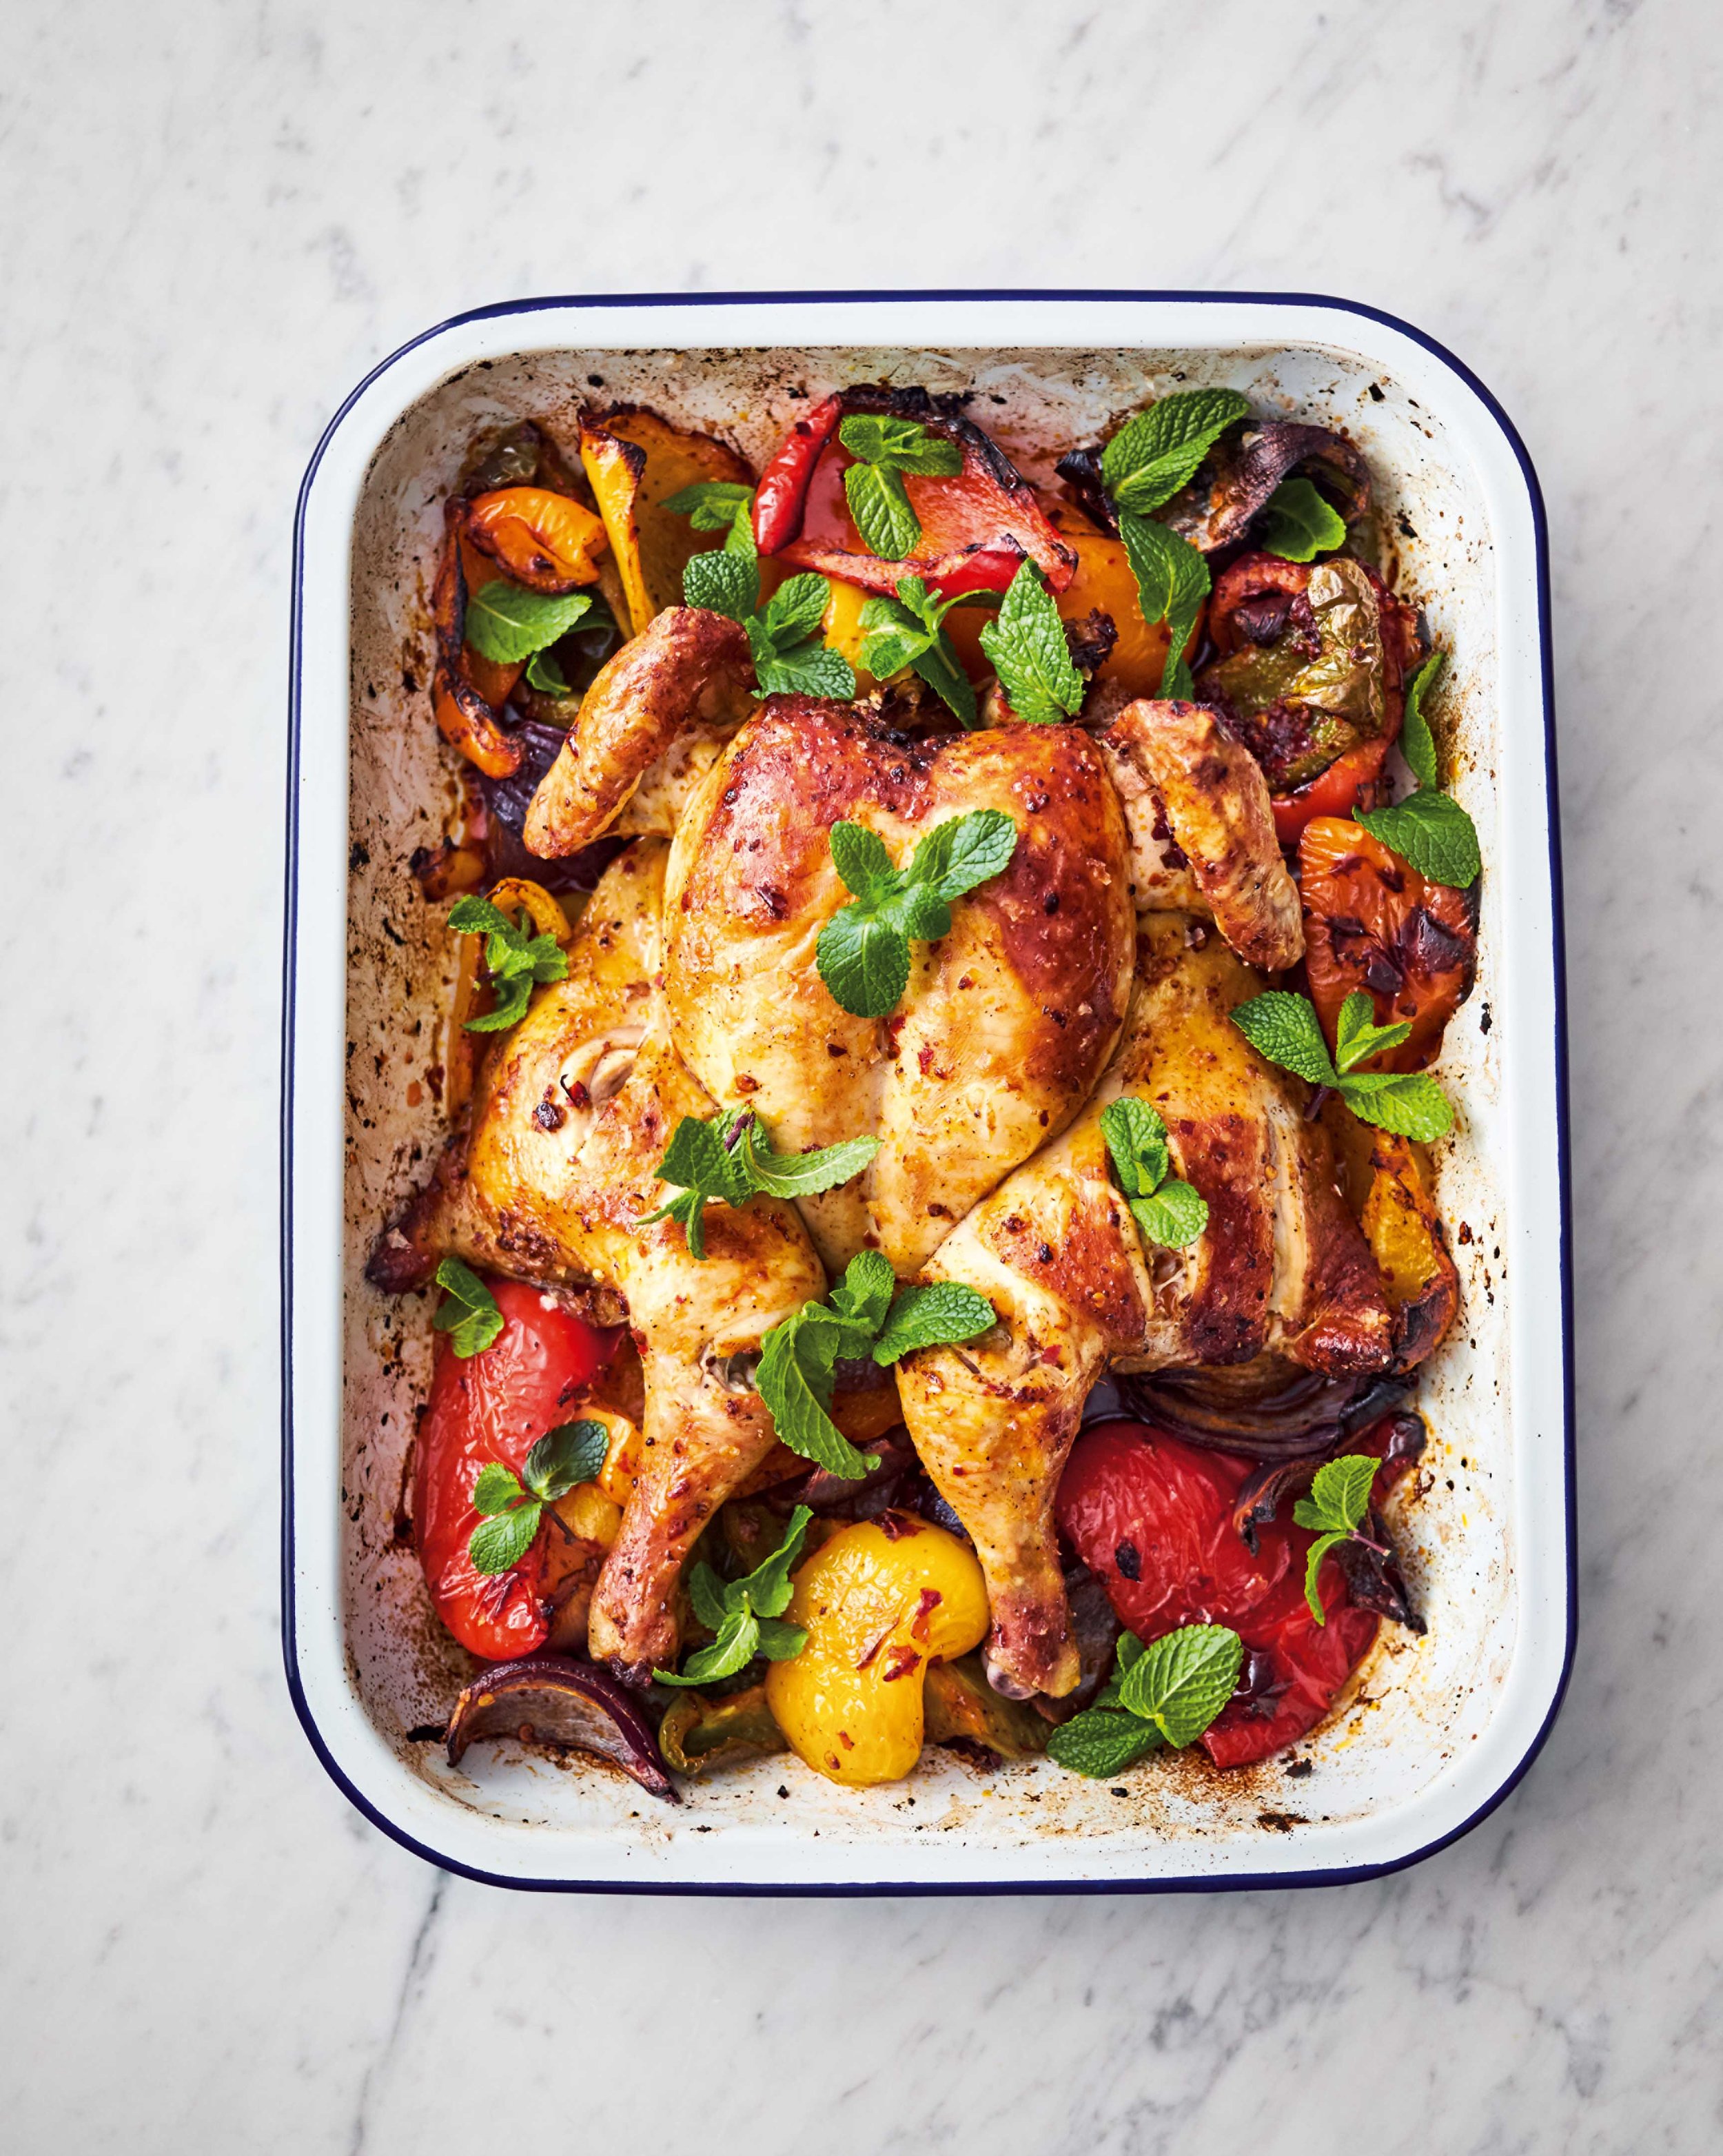 Jamie Oliver's 5 ingredient harissa chicken traybake — Sutton Hoo Chicken